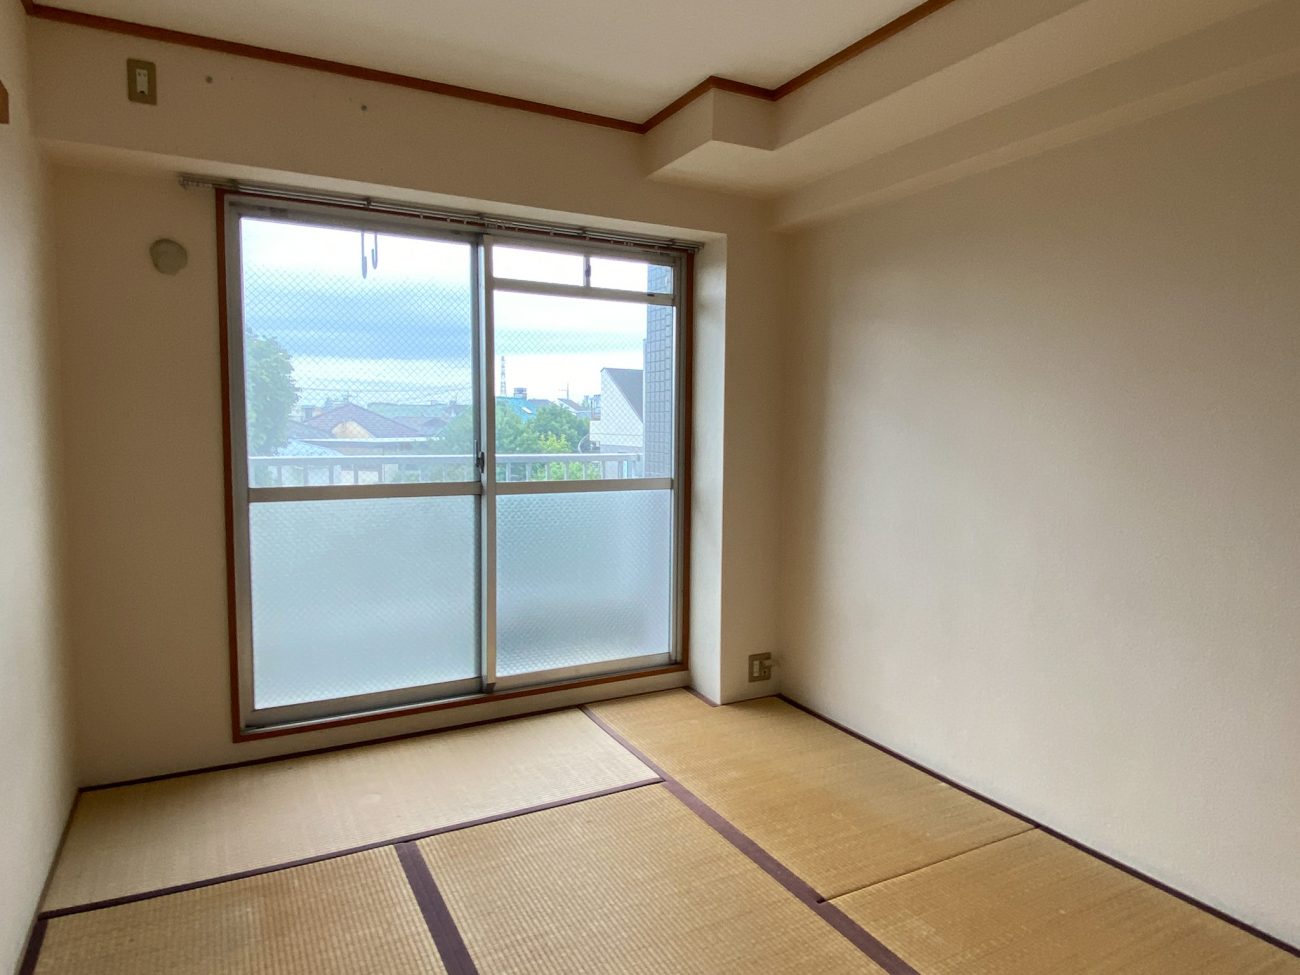 上石神井 築28年 RC 2LDK57㎡  ファミリータイプの部屋をリノベーションで完成前に入居確定の画像